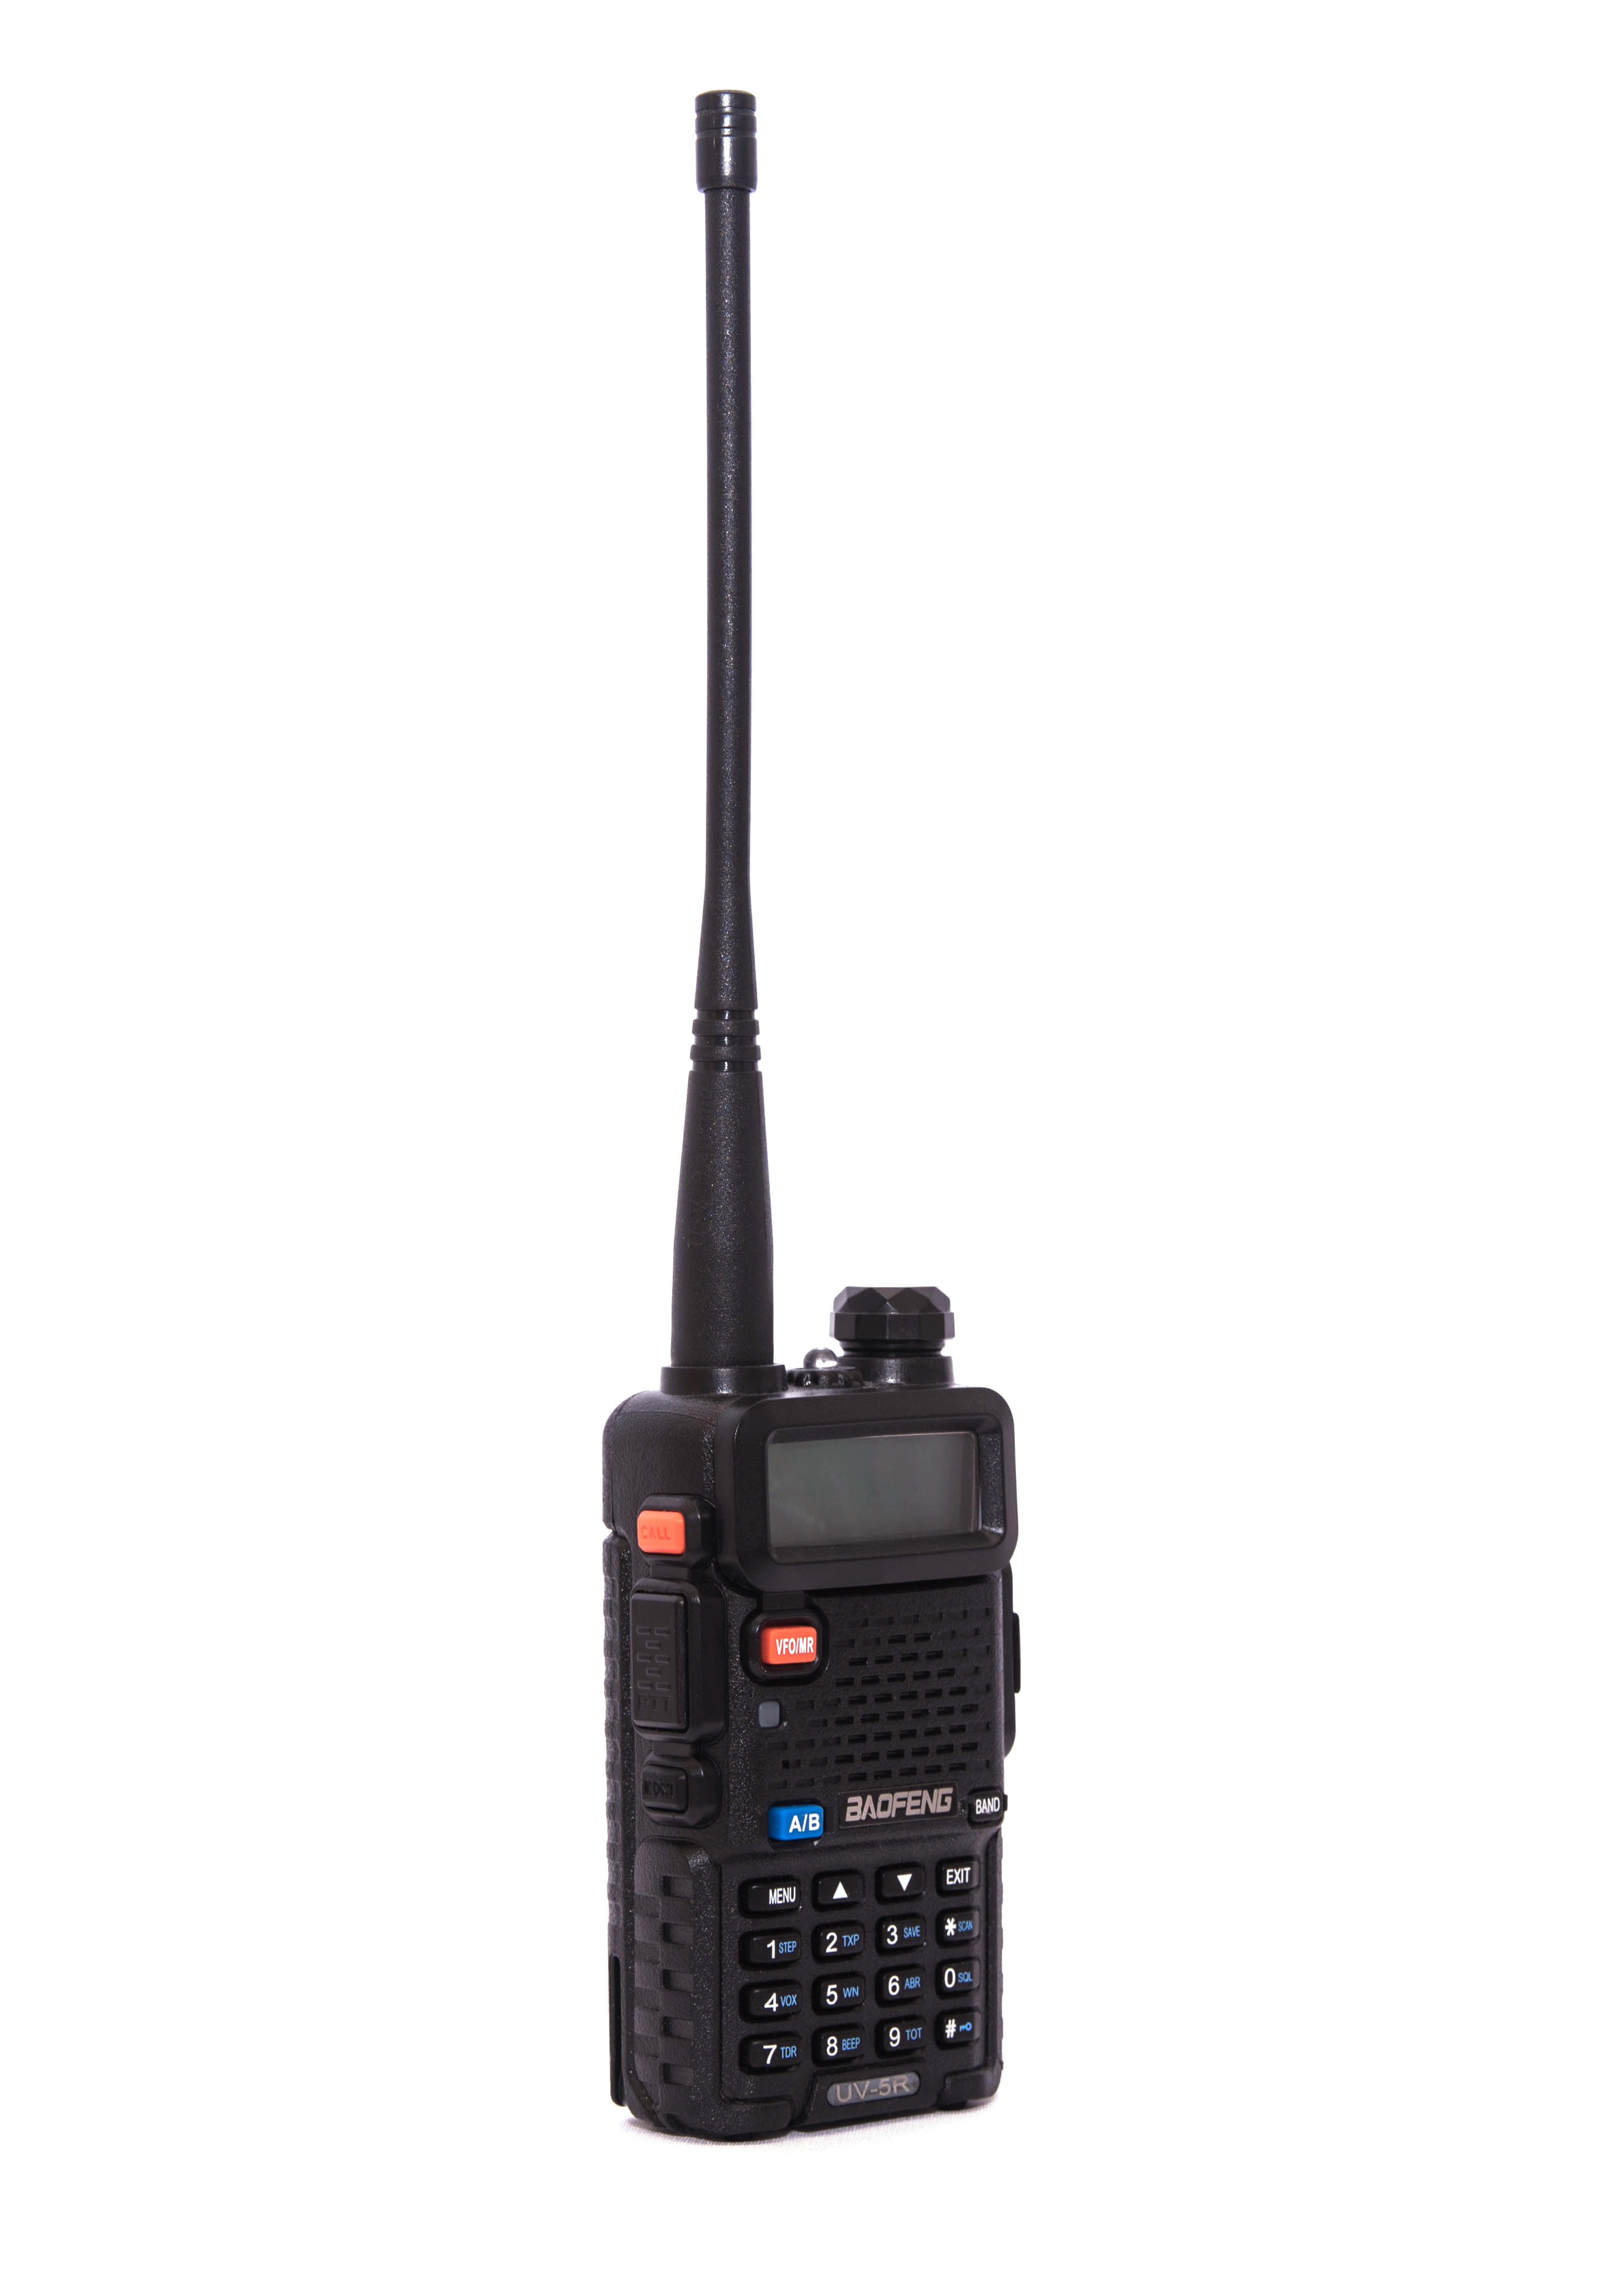  BAOFENG UV-5R Ham Radio 8W Dual Band Handheld UV5R Two